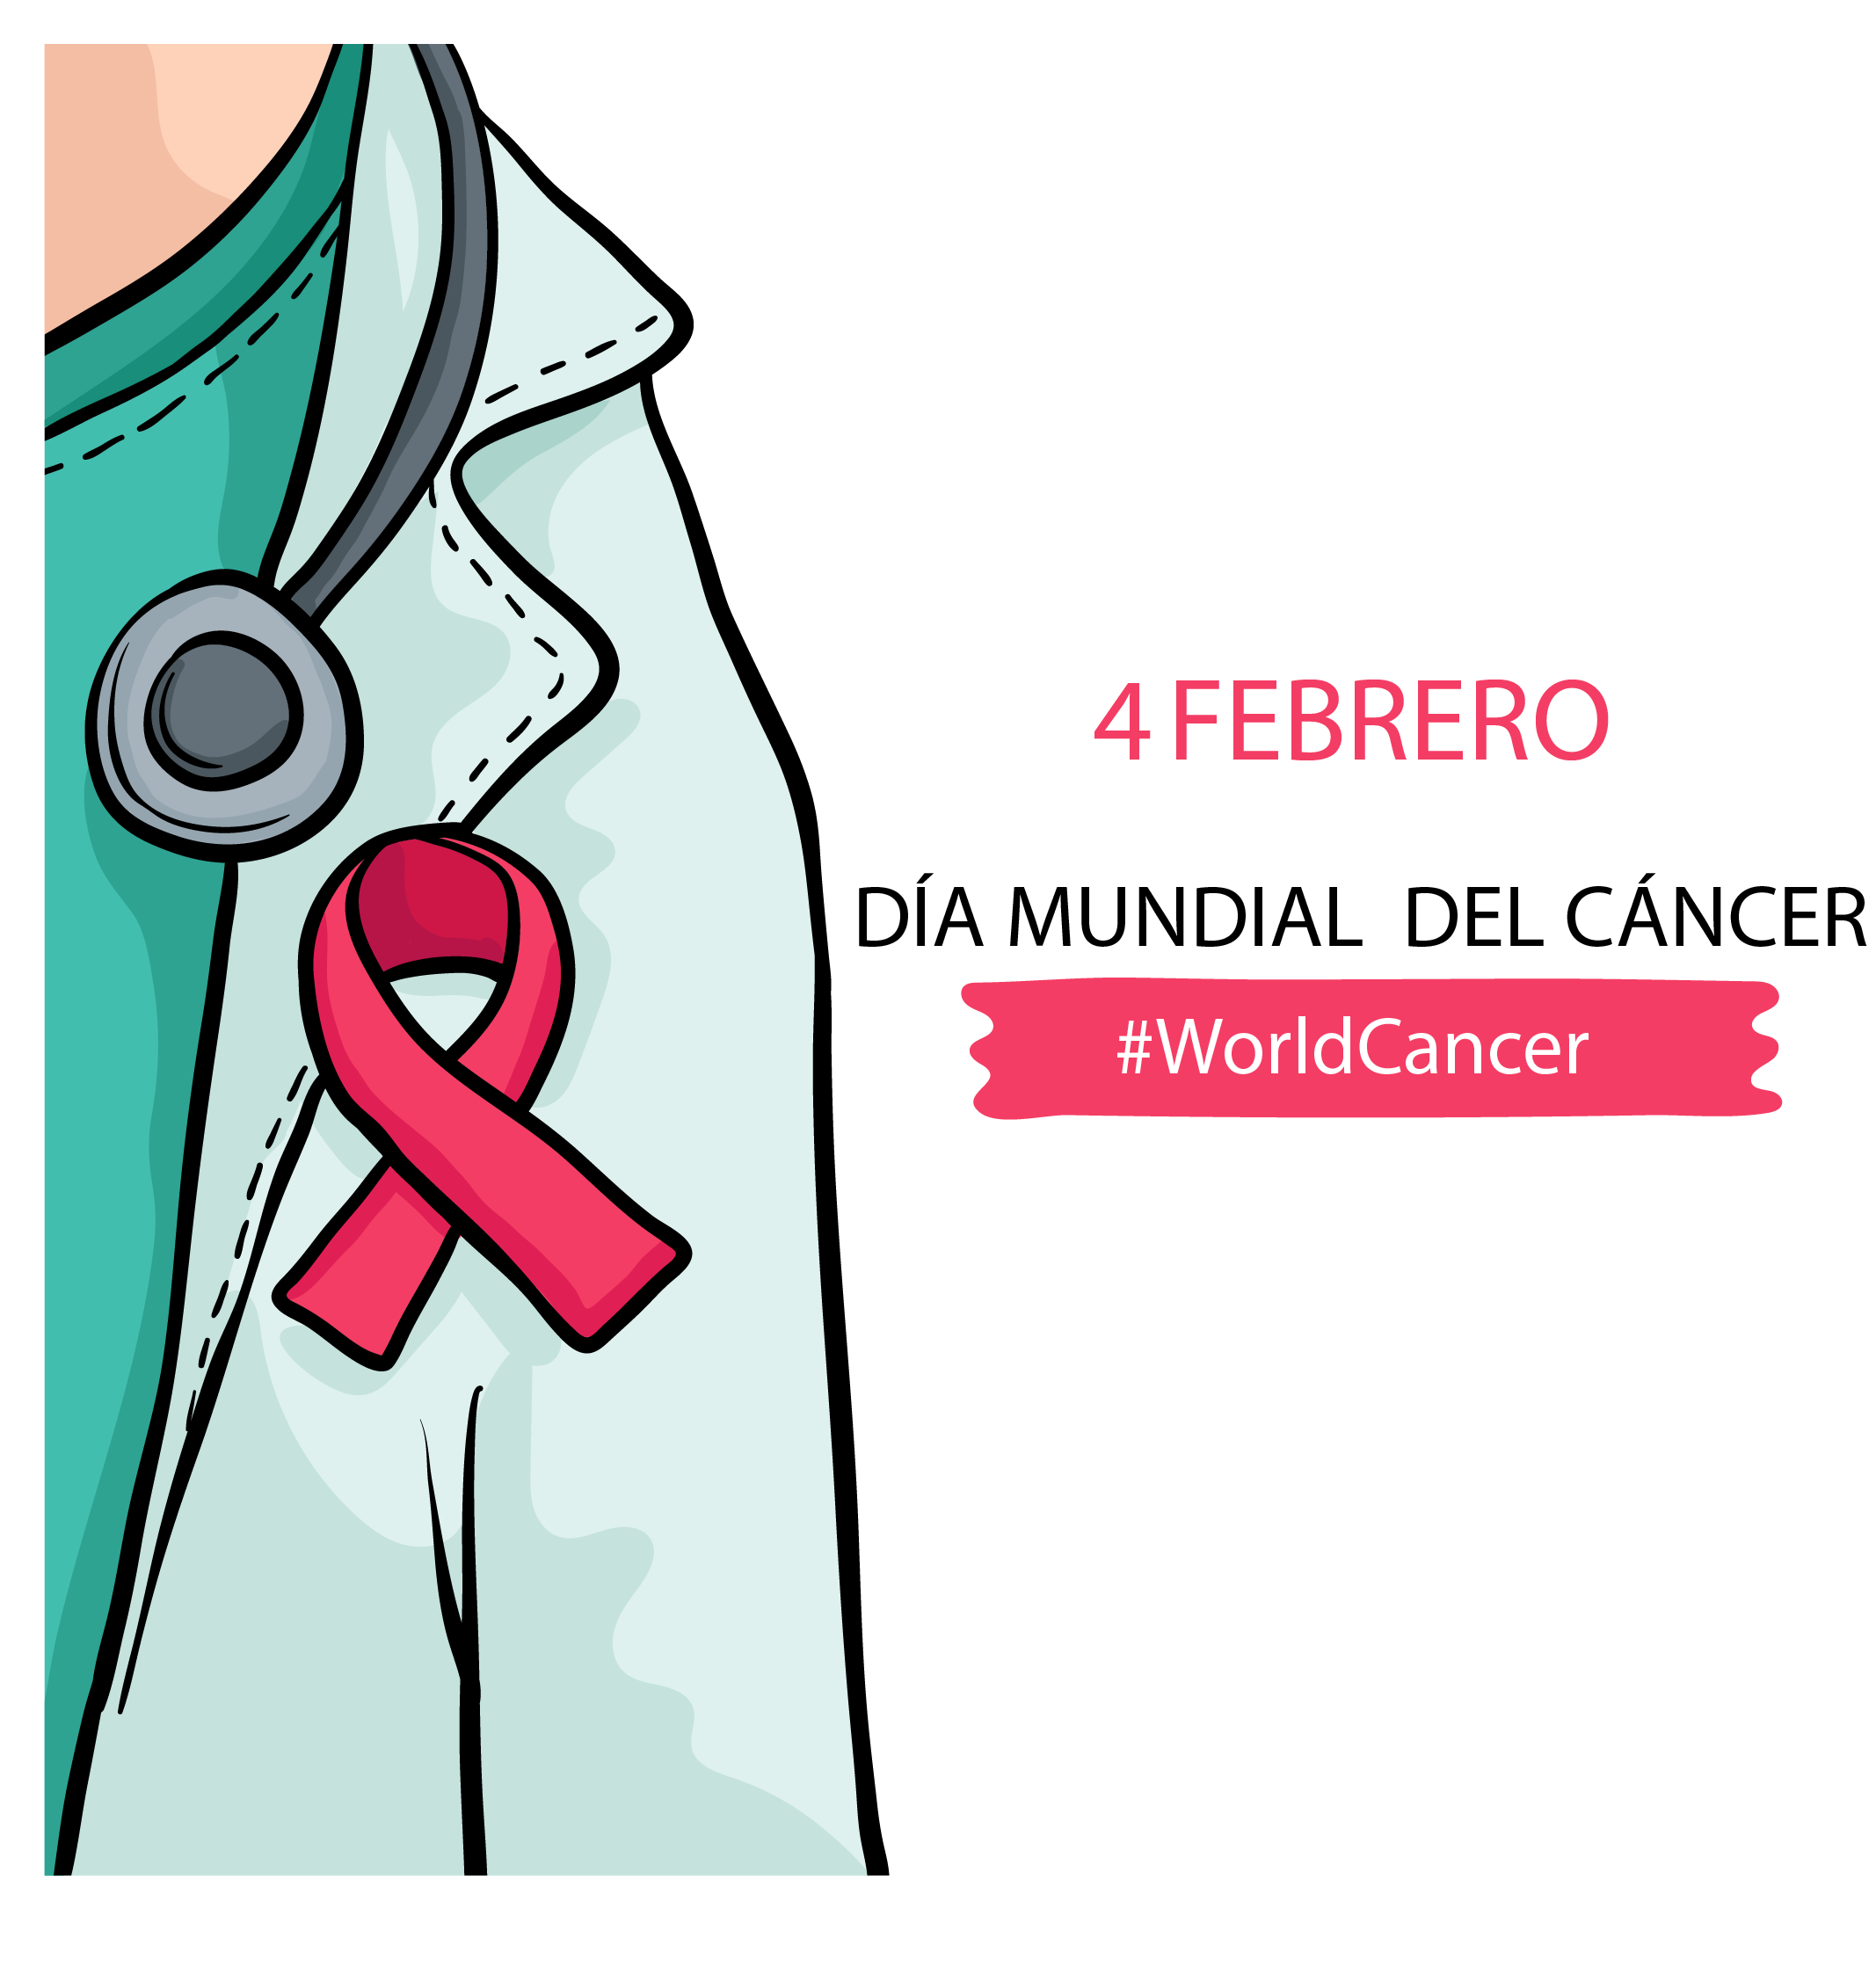 4 de febrero día mundial del cáncer